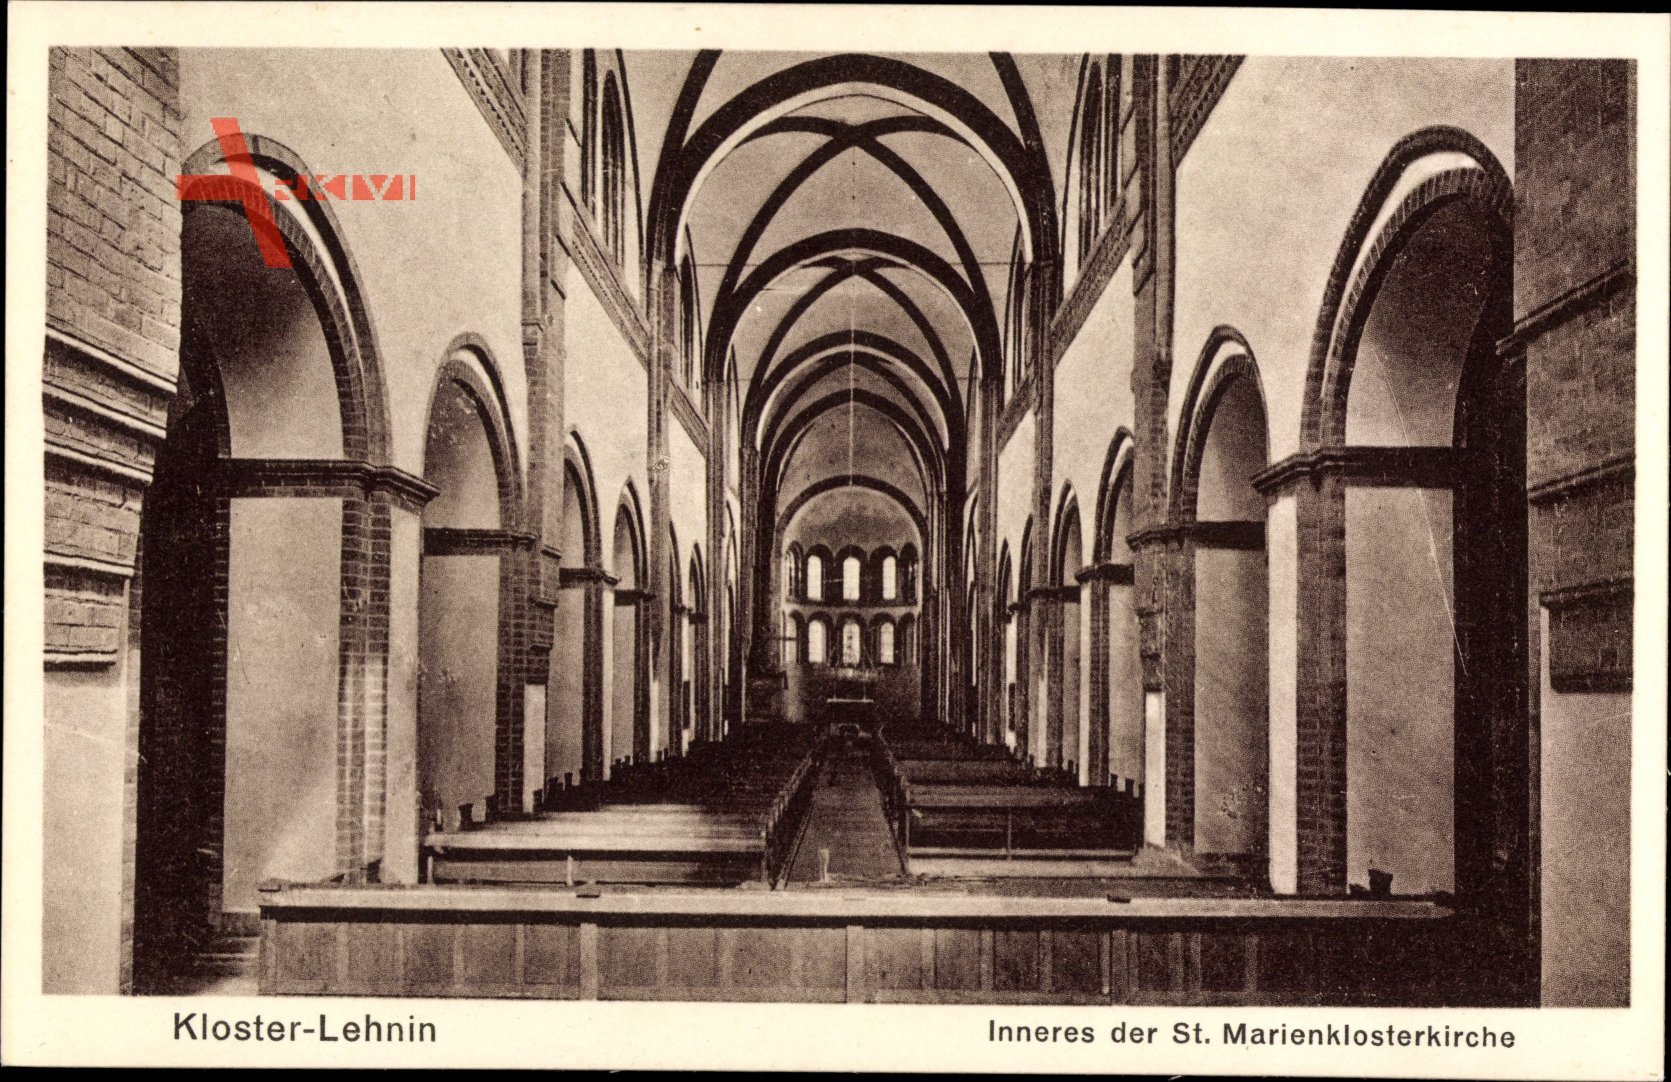 Kloster Lehnin in Brandenburg, Inneres der St. Marienklosterkirche